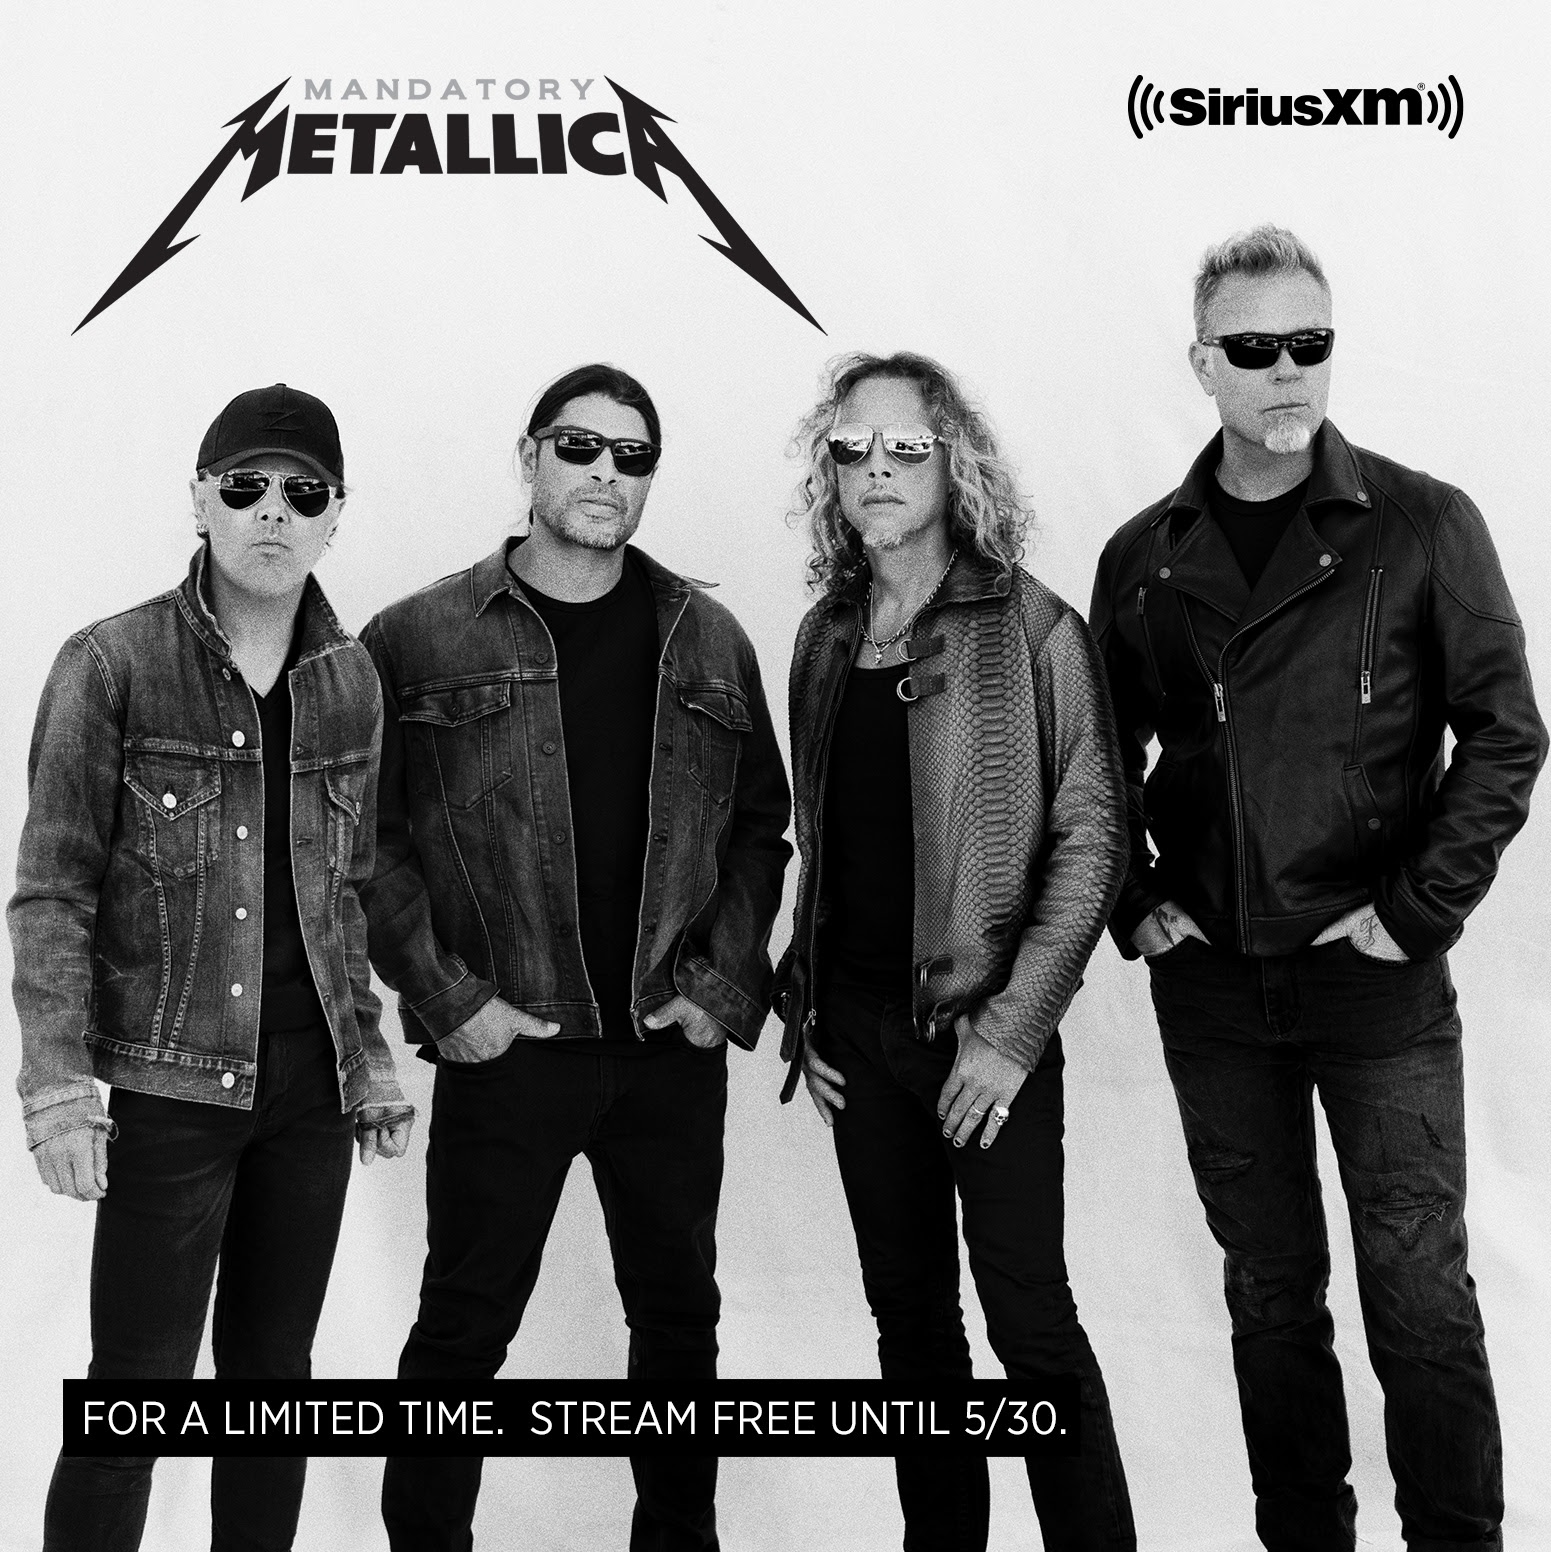 Mandatory Metallica on SiriusXM